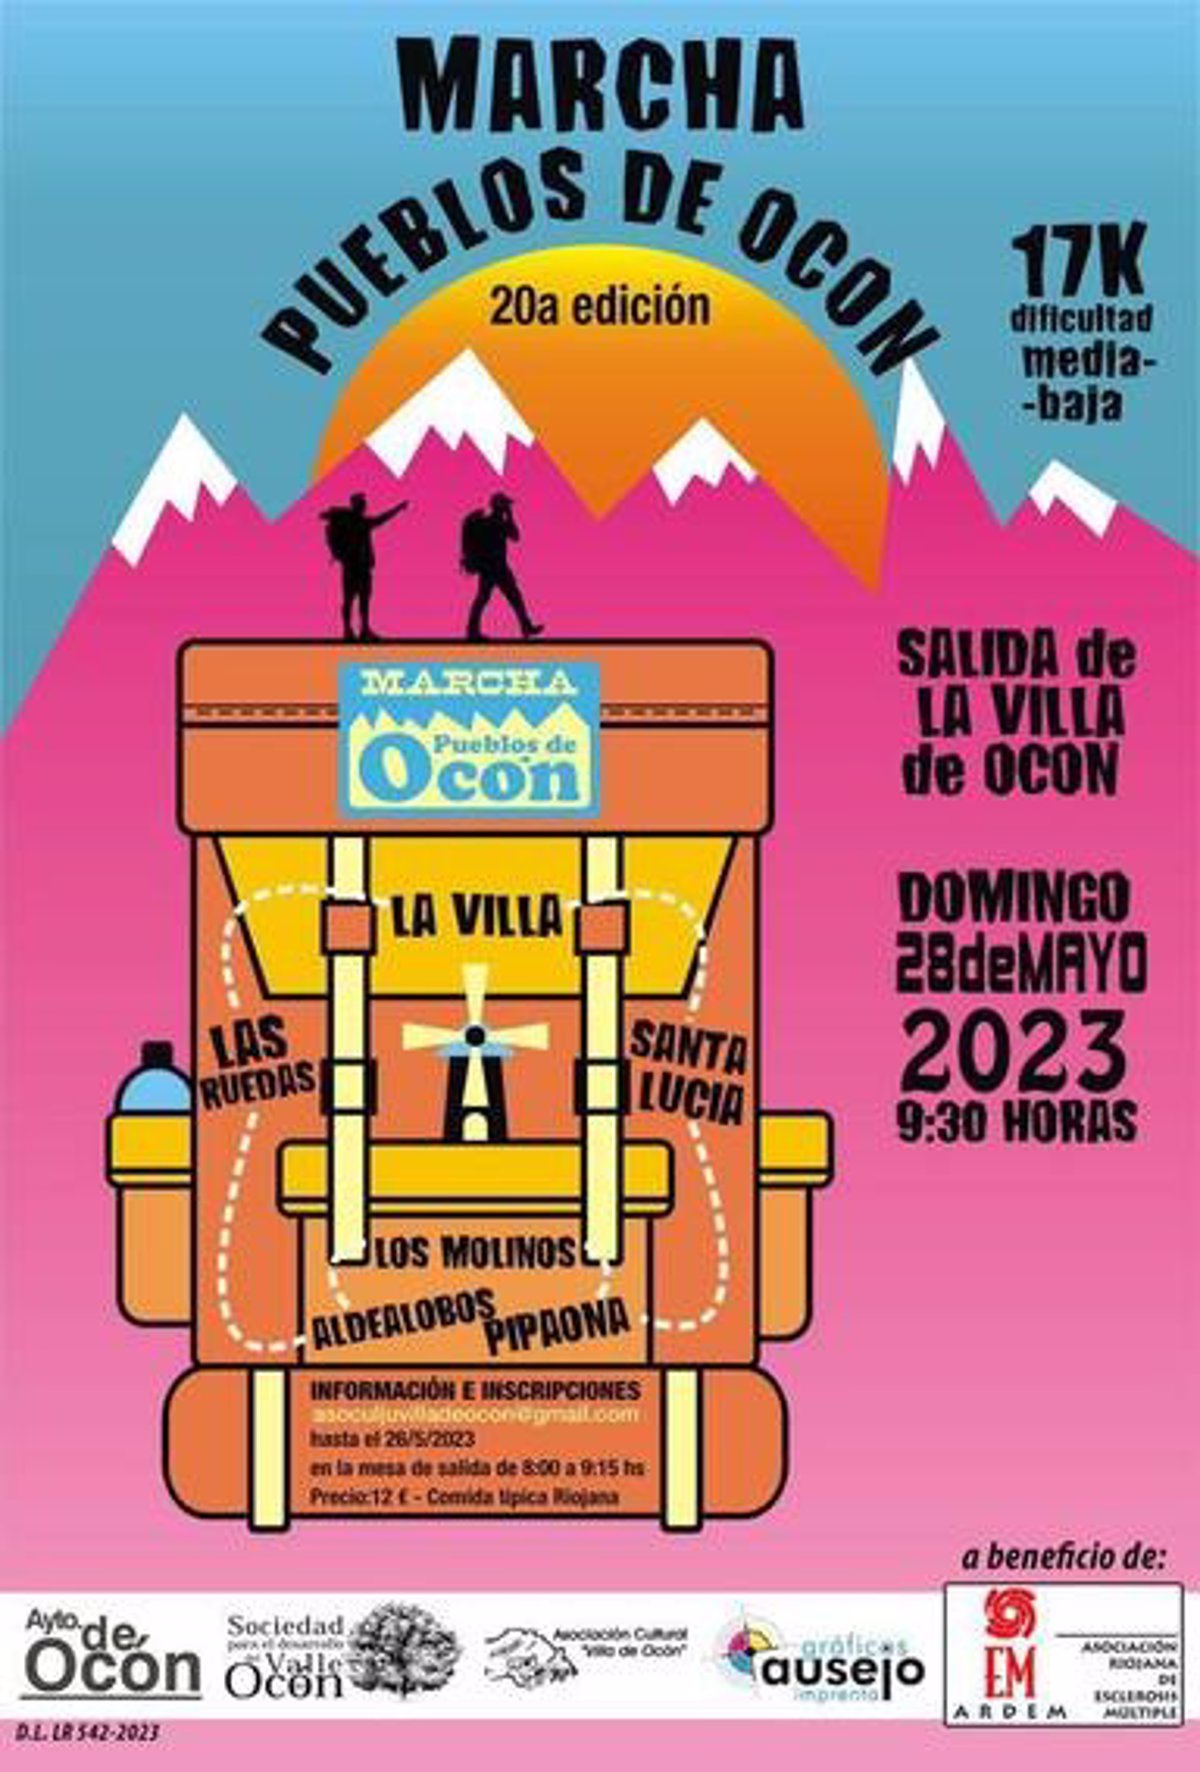 La Marcha Pueblos de Ocón se celebra este domingo su 20 edición, en colaboración con ARDEM